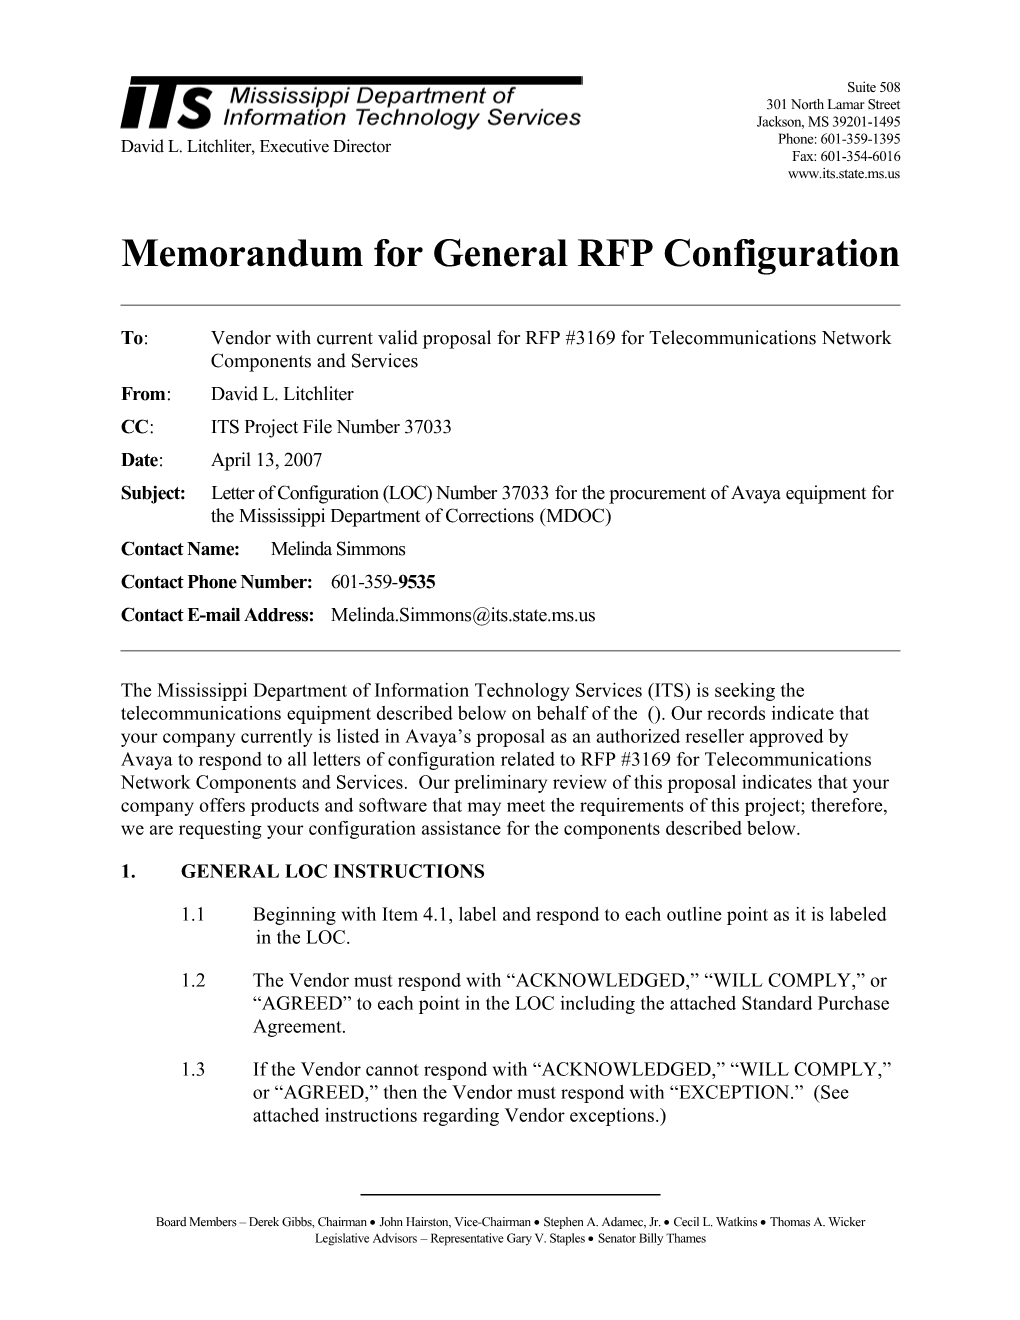 Memorandum for General RFP Configuration s25